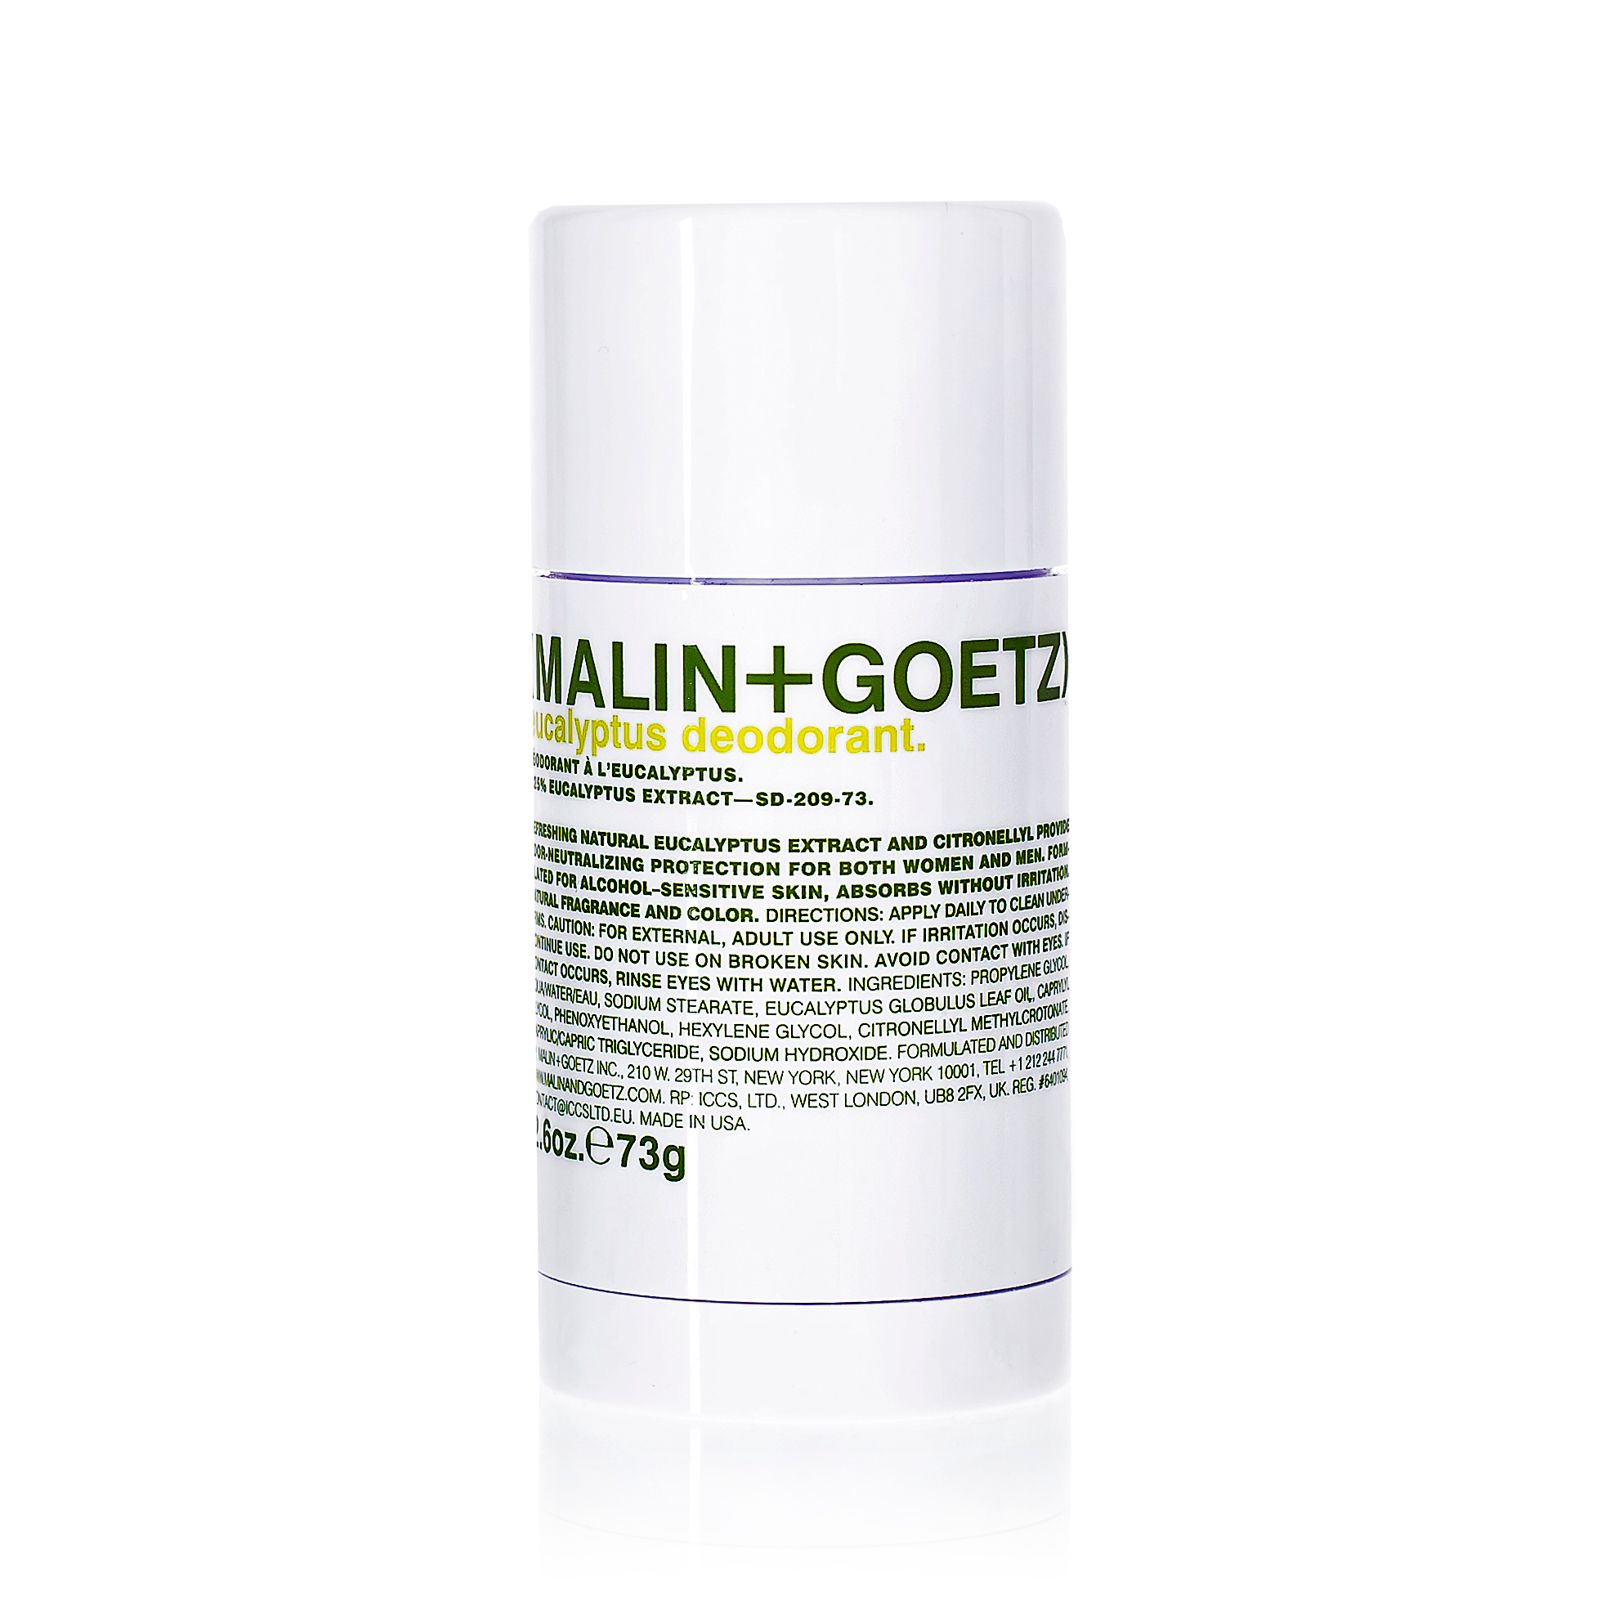 MALIN+GOETZ Eucalyptus Deodorant 73 gr.